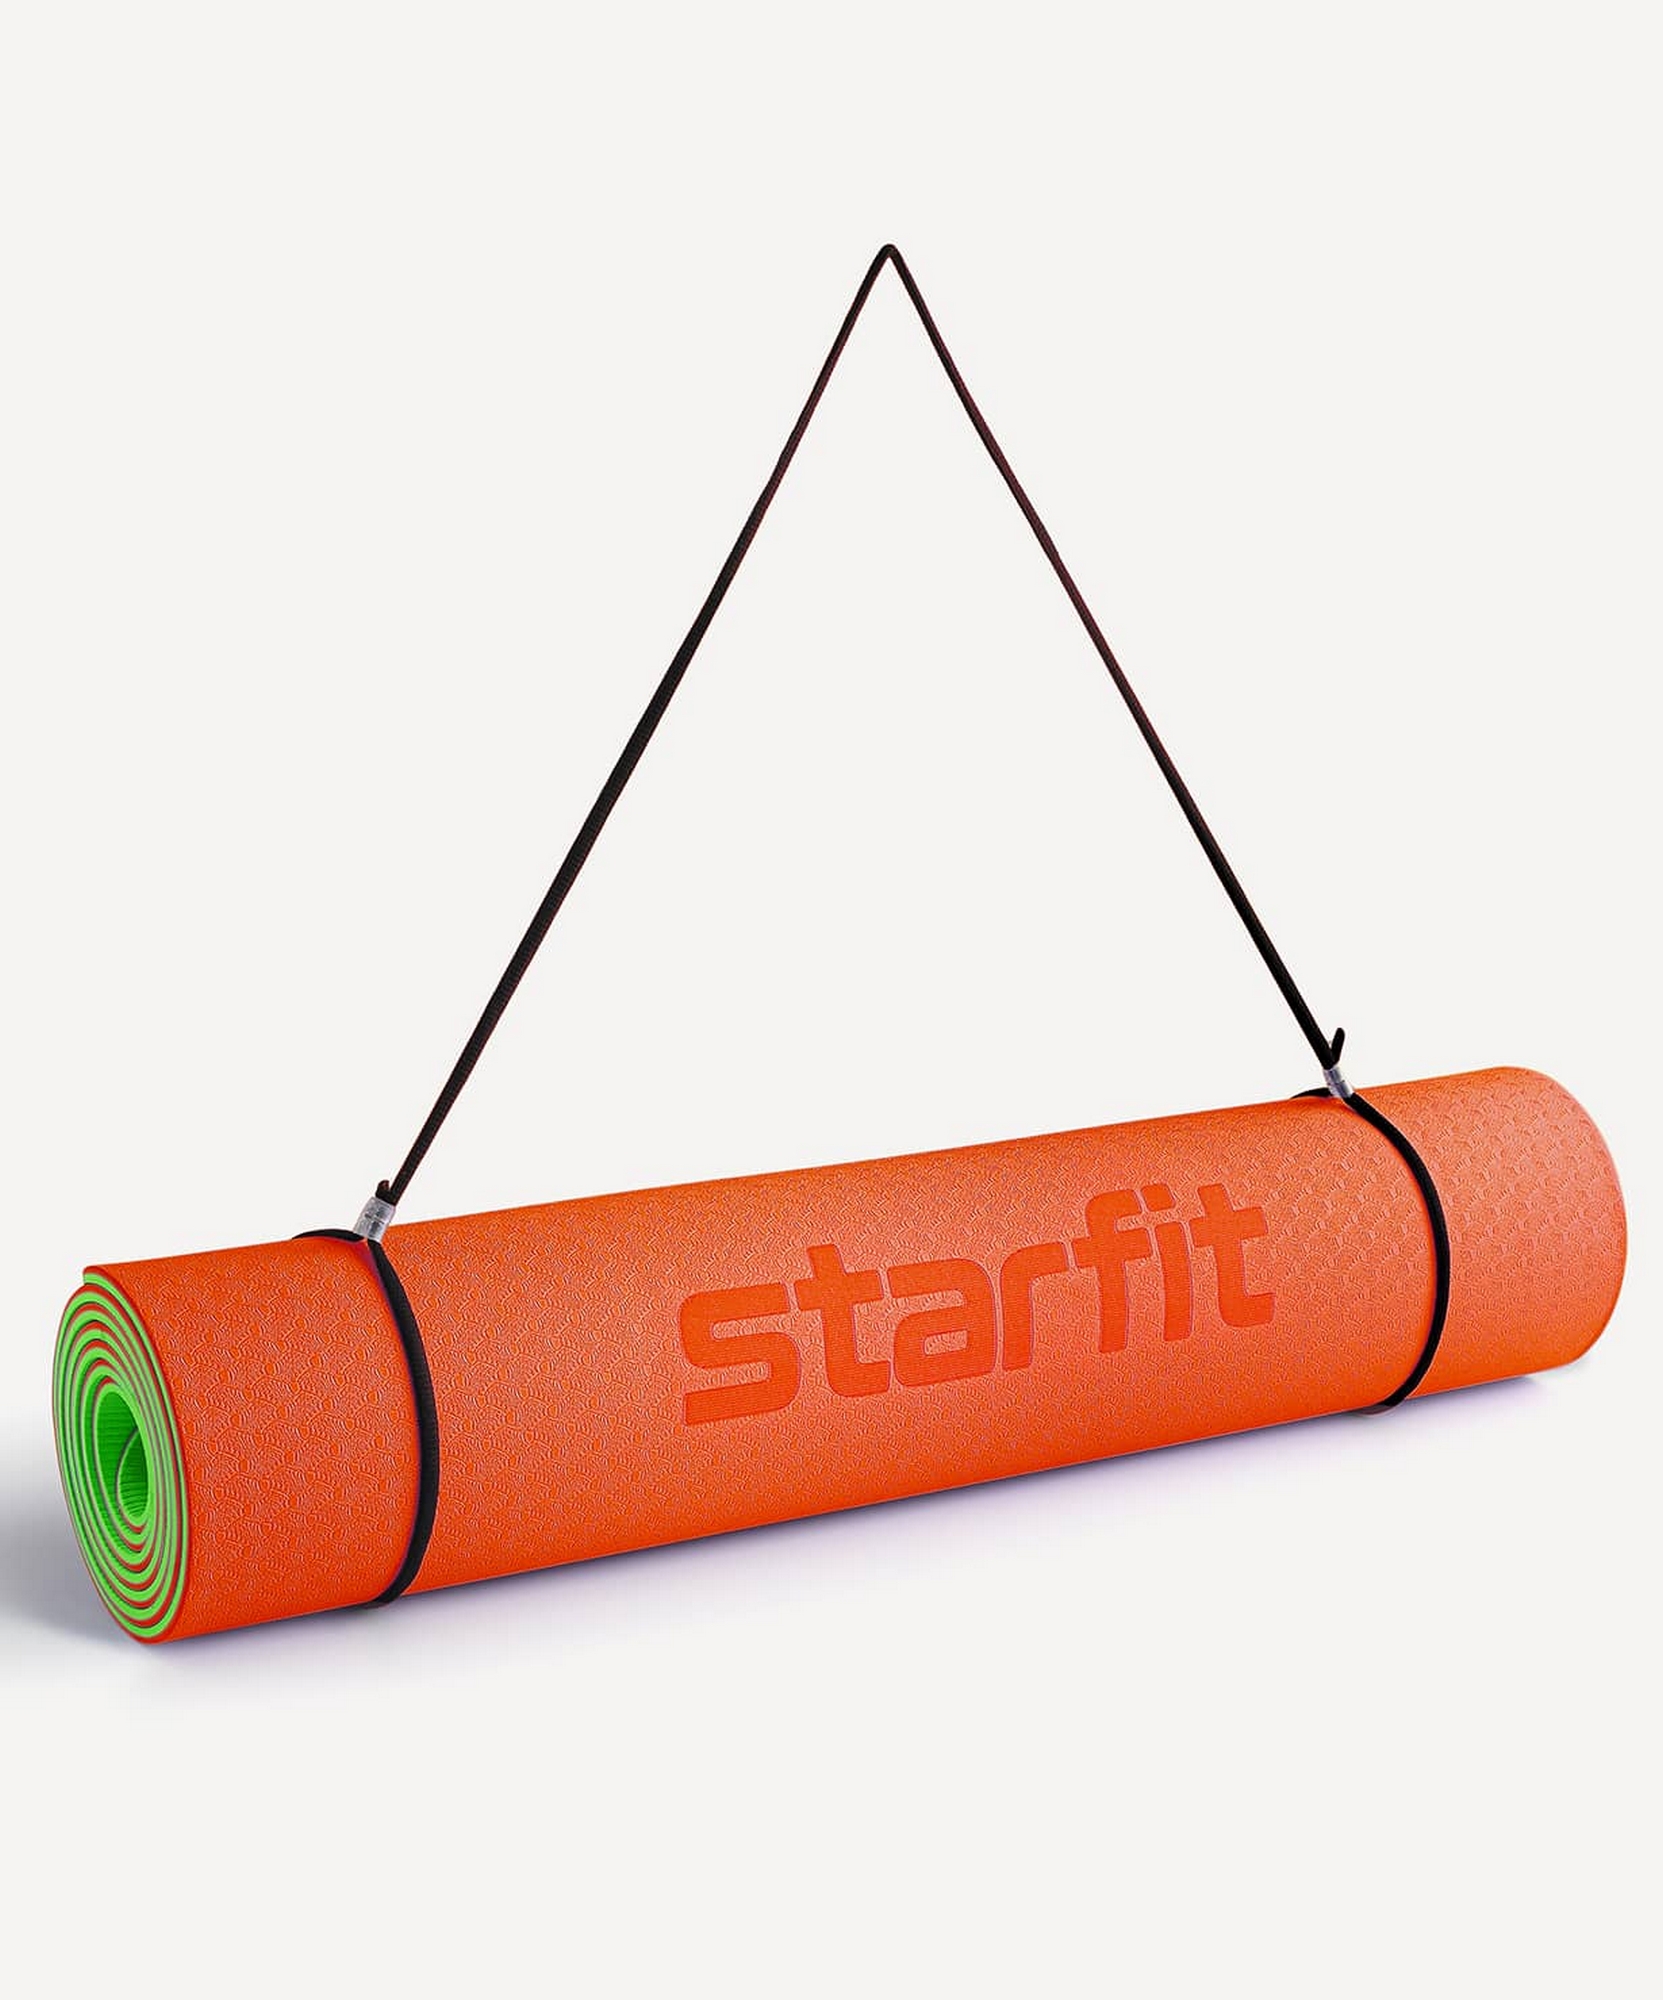 Коврик для йоги и фитнеса, TPE, 183x61x0,4см Star Fit FM-201 оранжевый\зеленый 1663_2000